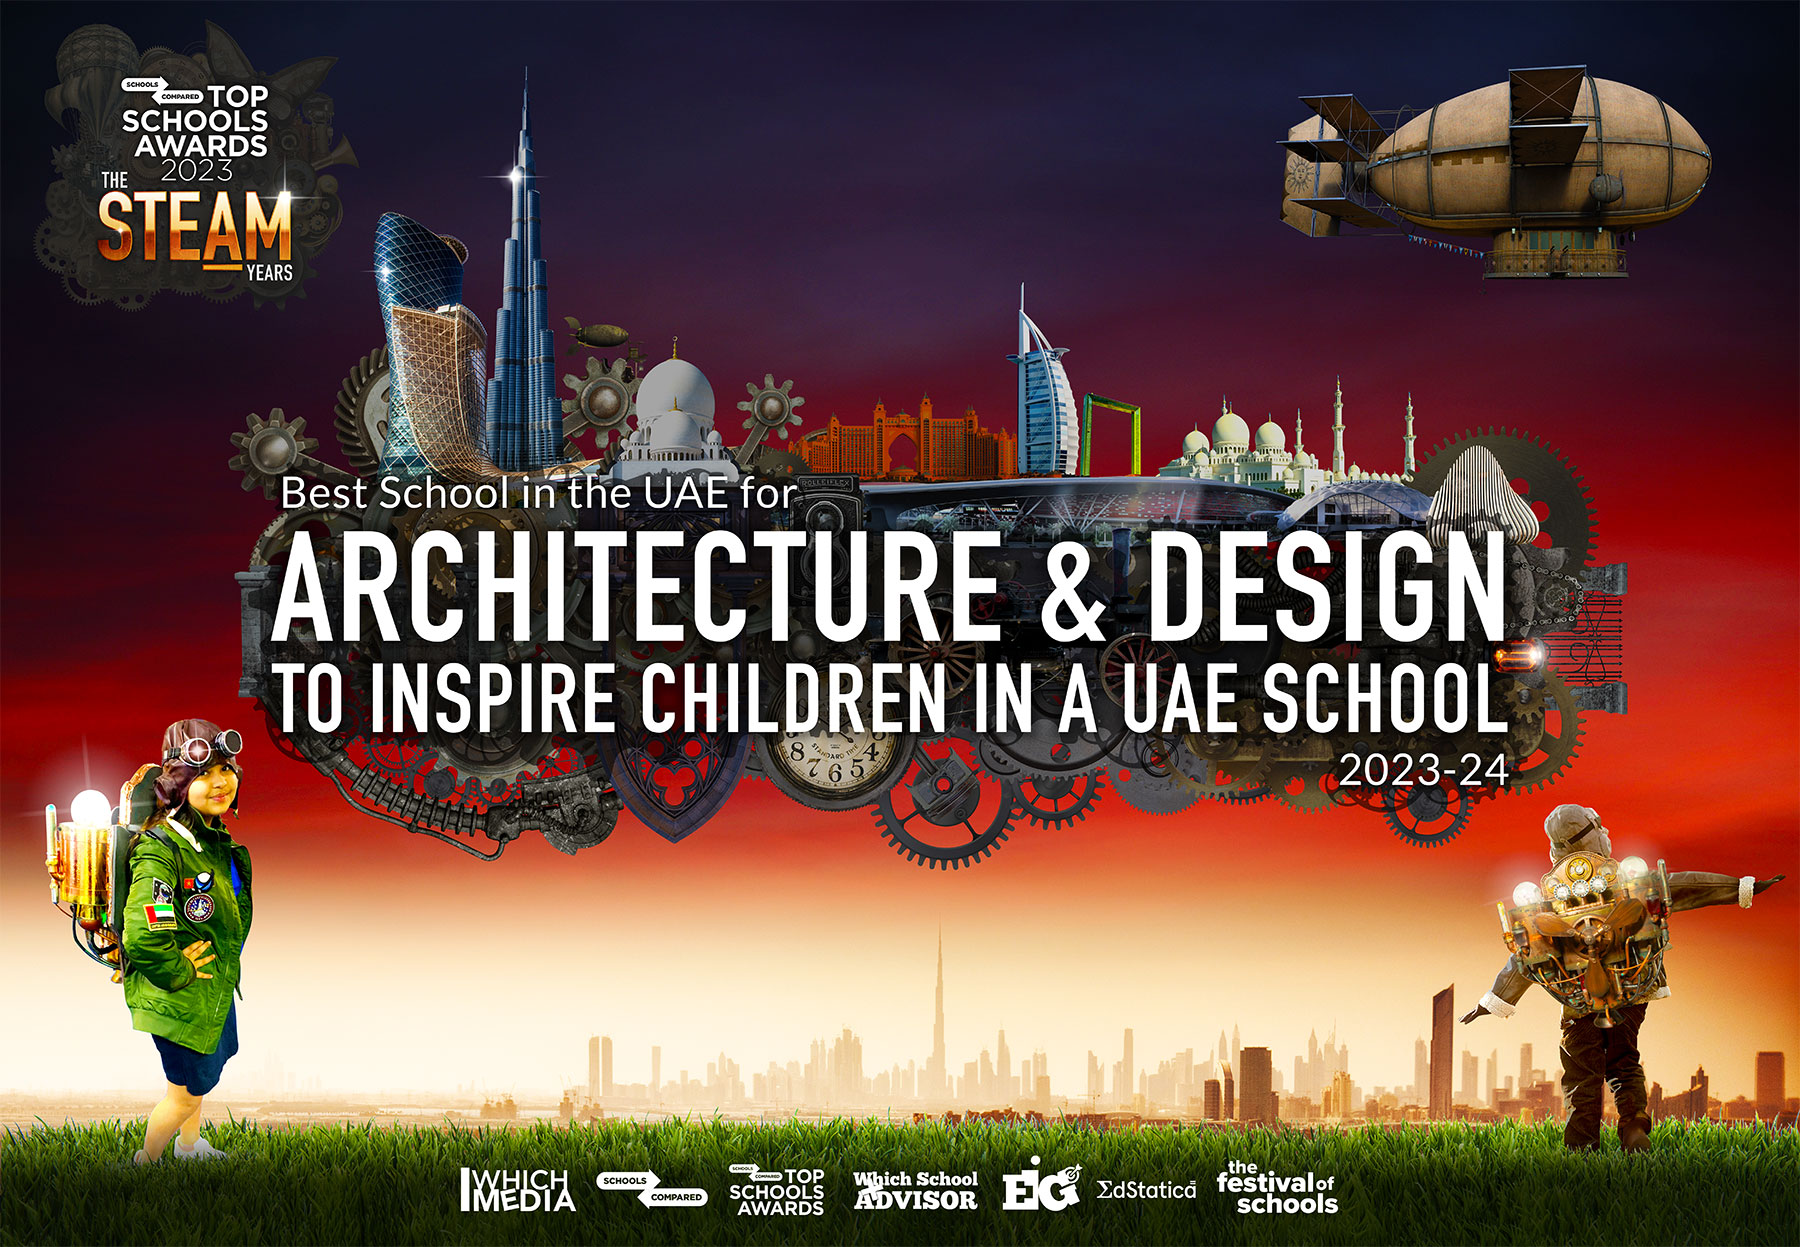 Top Schools Awards 2023. Beste Schule in den VAE für Architektur und Design zur Inspiration von Kindern